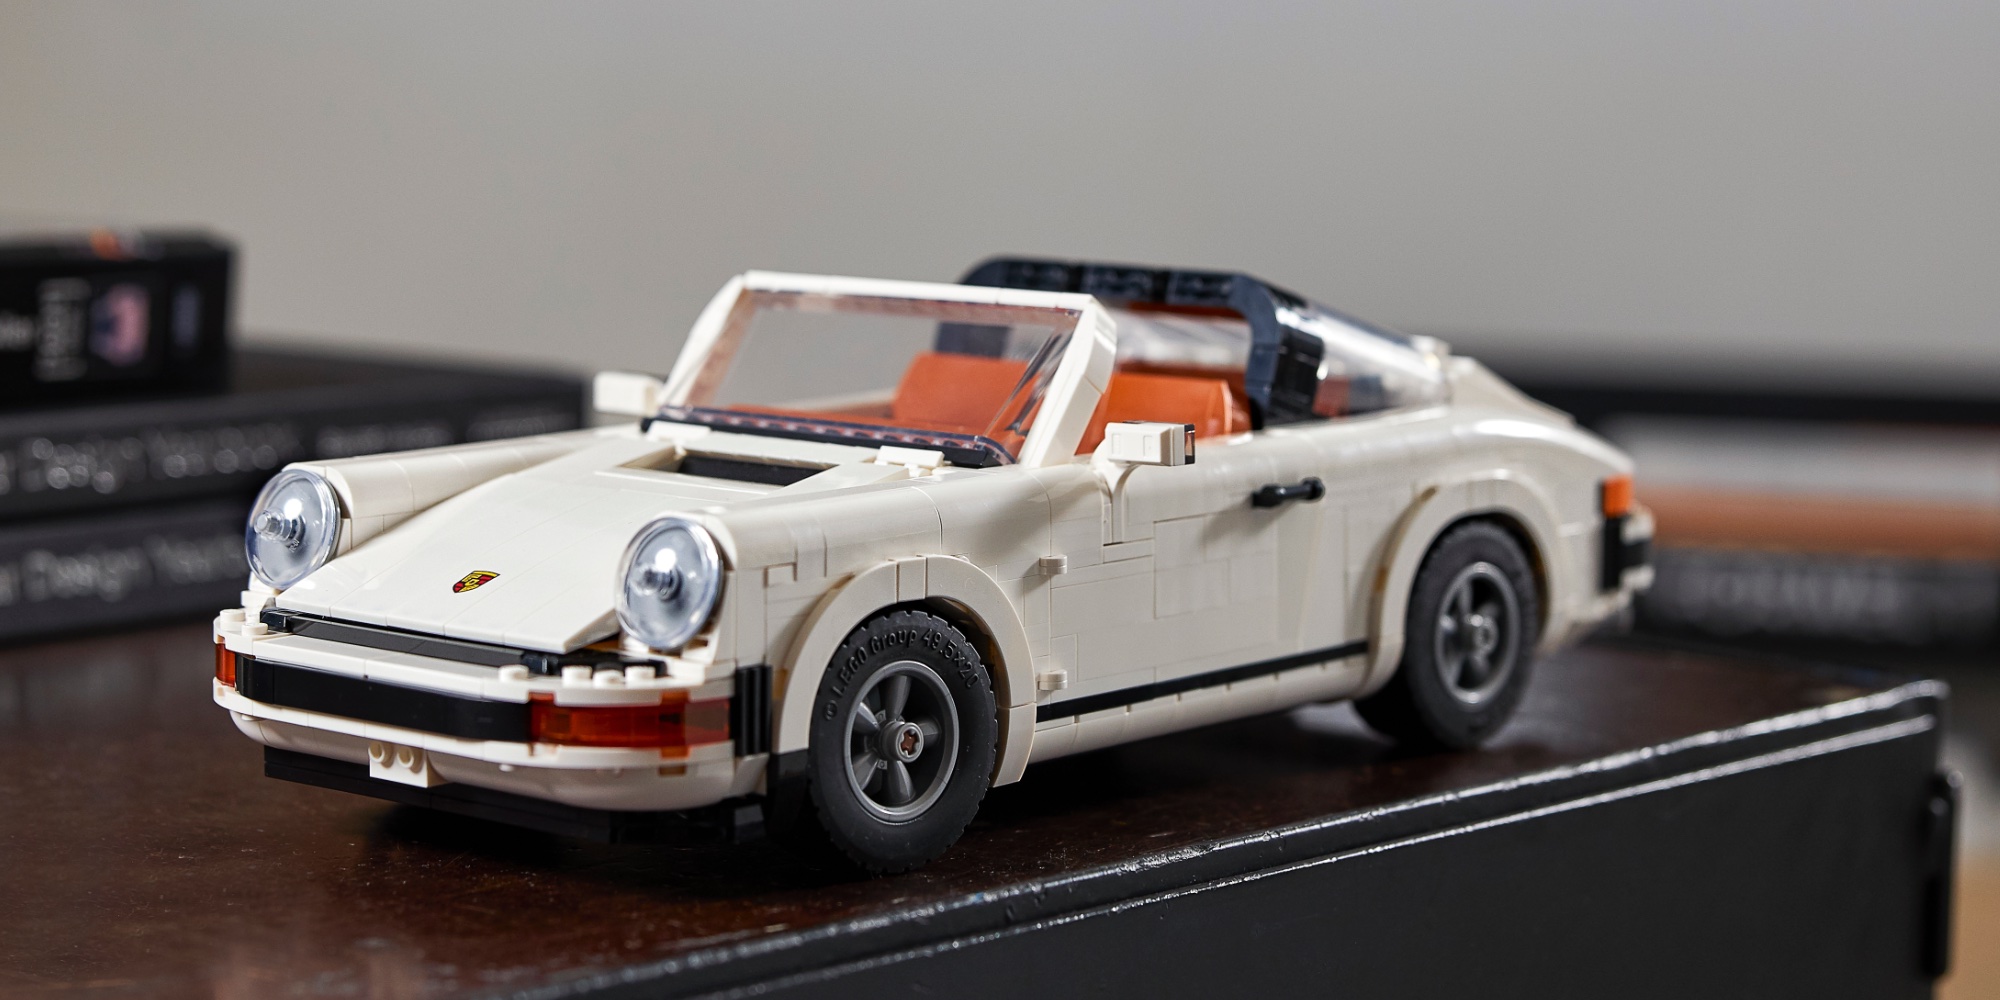 LEGO Porsche 911 debuts as new 1,400-piece Creator vehicle - 9to5Toys